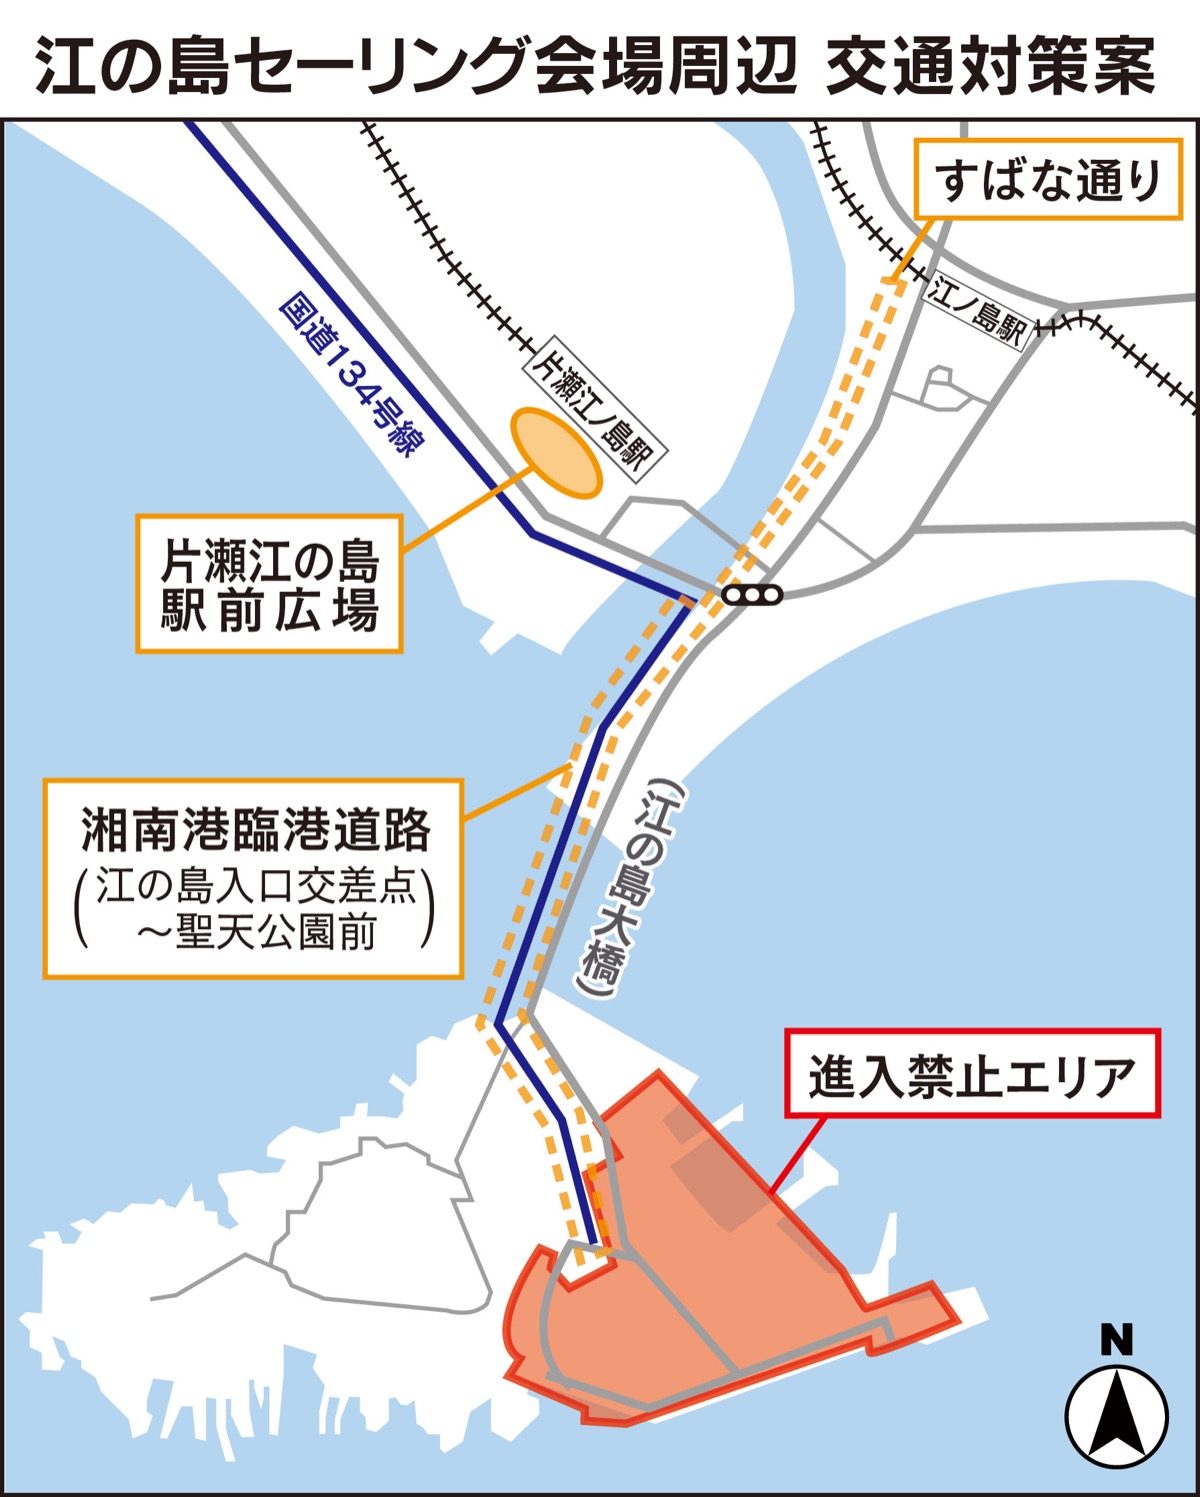 江の島周辺 交通規制へ 五輪セーリング期間で調整 藤沢 タウンニュース